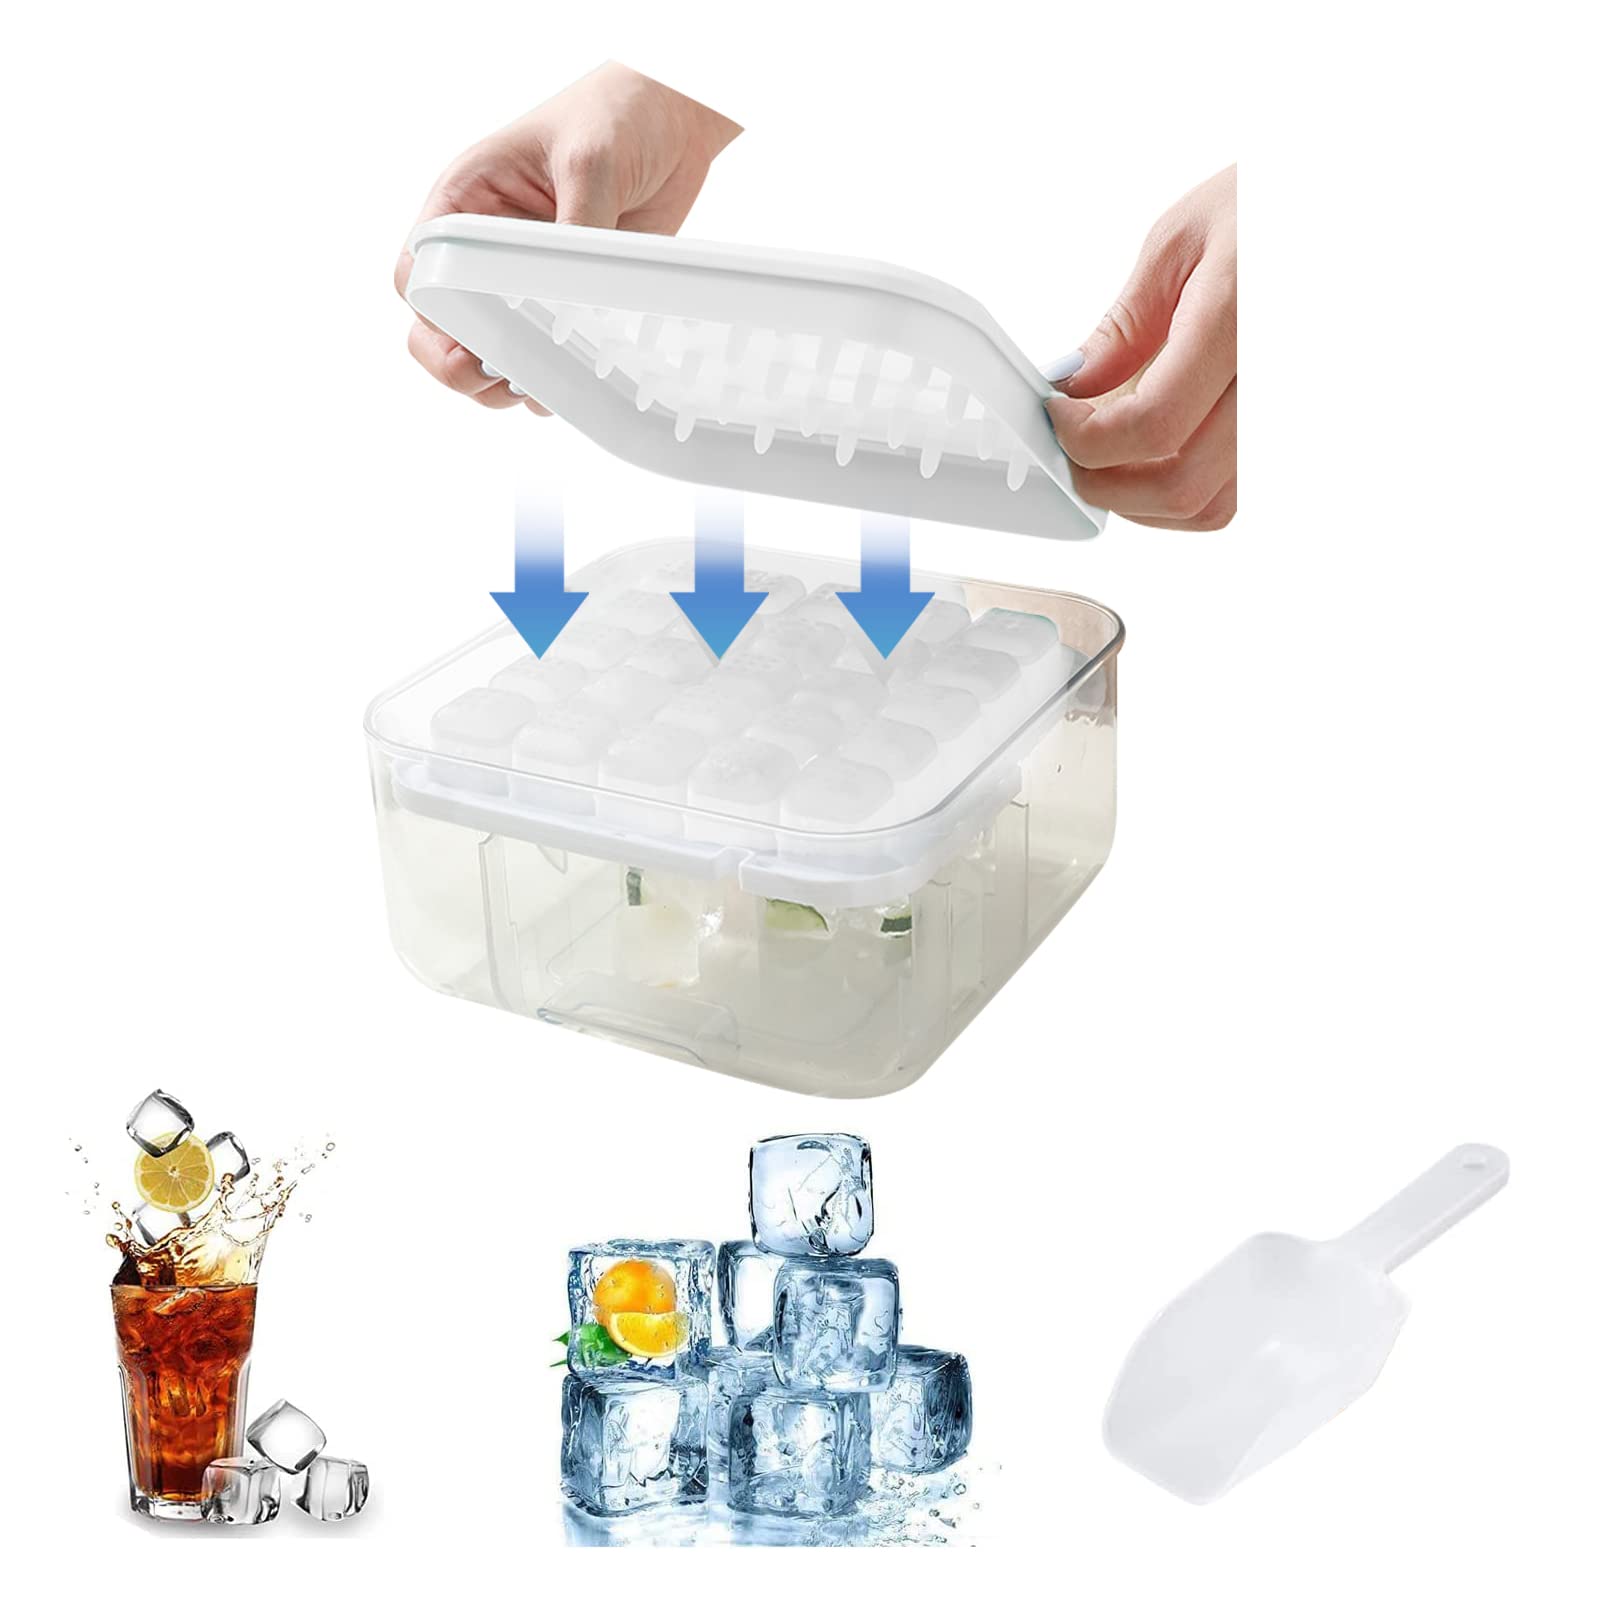 【角氷が取り出しやすい】シリコーン製品を使用した独特のやわらかいデザインで、角氷を簡単に取り出せます。長時間凍らせ、箱の内側を軽く押すだけで、すべての角氷を型から外すのに1秒しかかかりません。プラスチックより使いやすい【素材】アイスボックス...